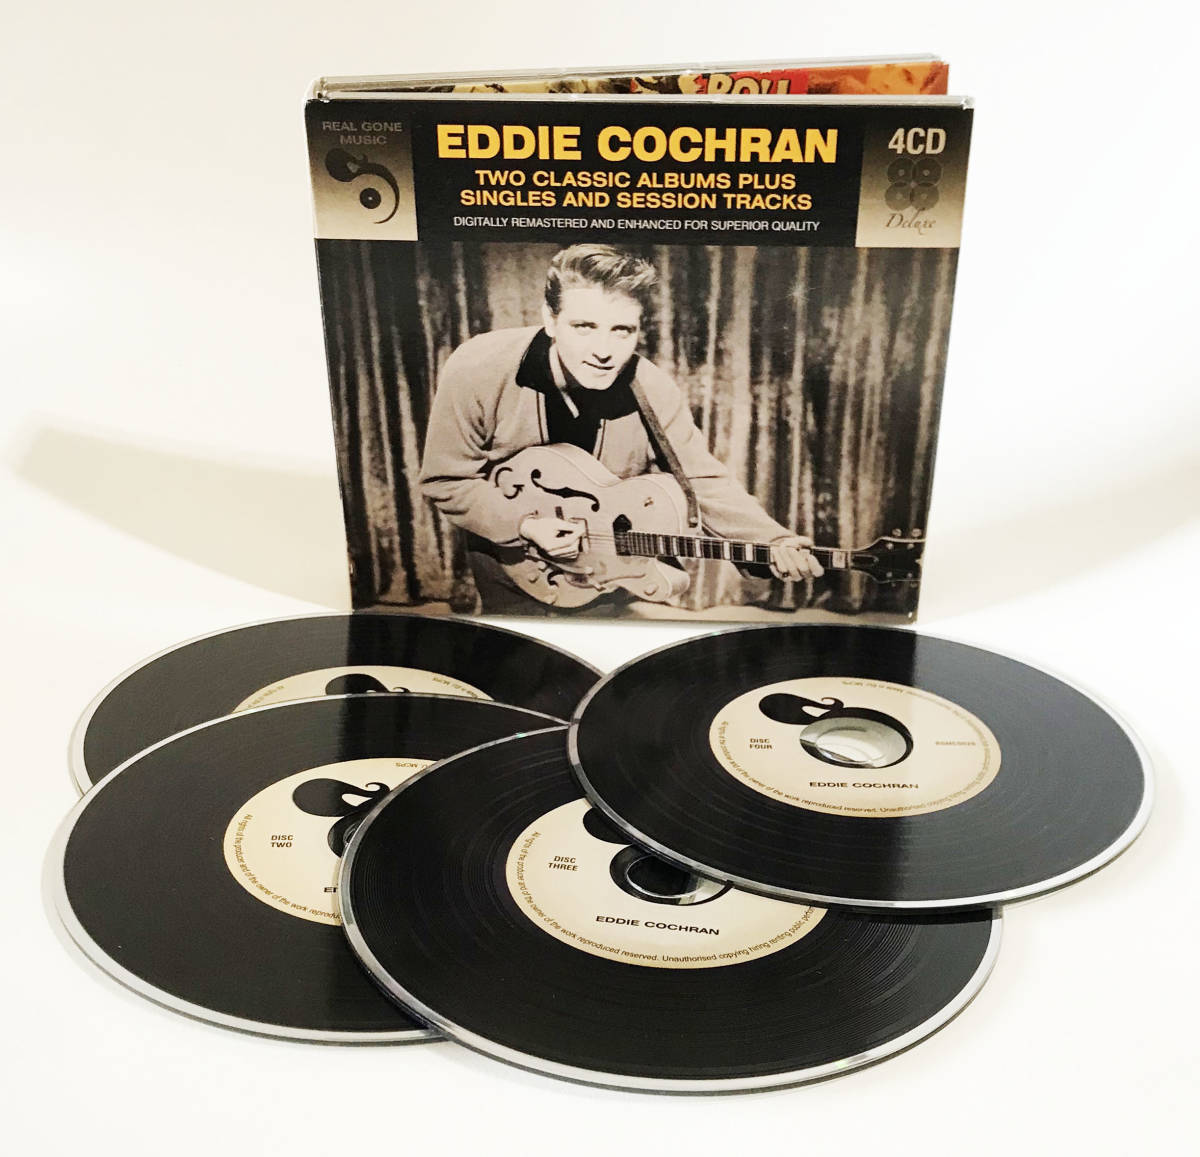 スマートレター発送限定 Eddie Cochran エディ コクラン 99曲収録 4CD 2 Plus Classic Session And Tracks 本物保証! Singles 無料発送 Albums